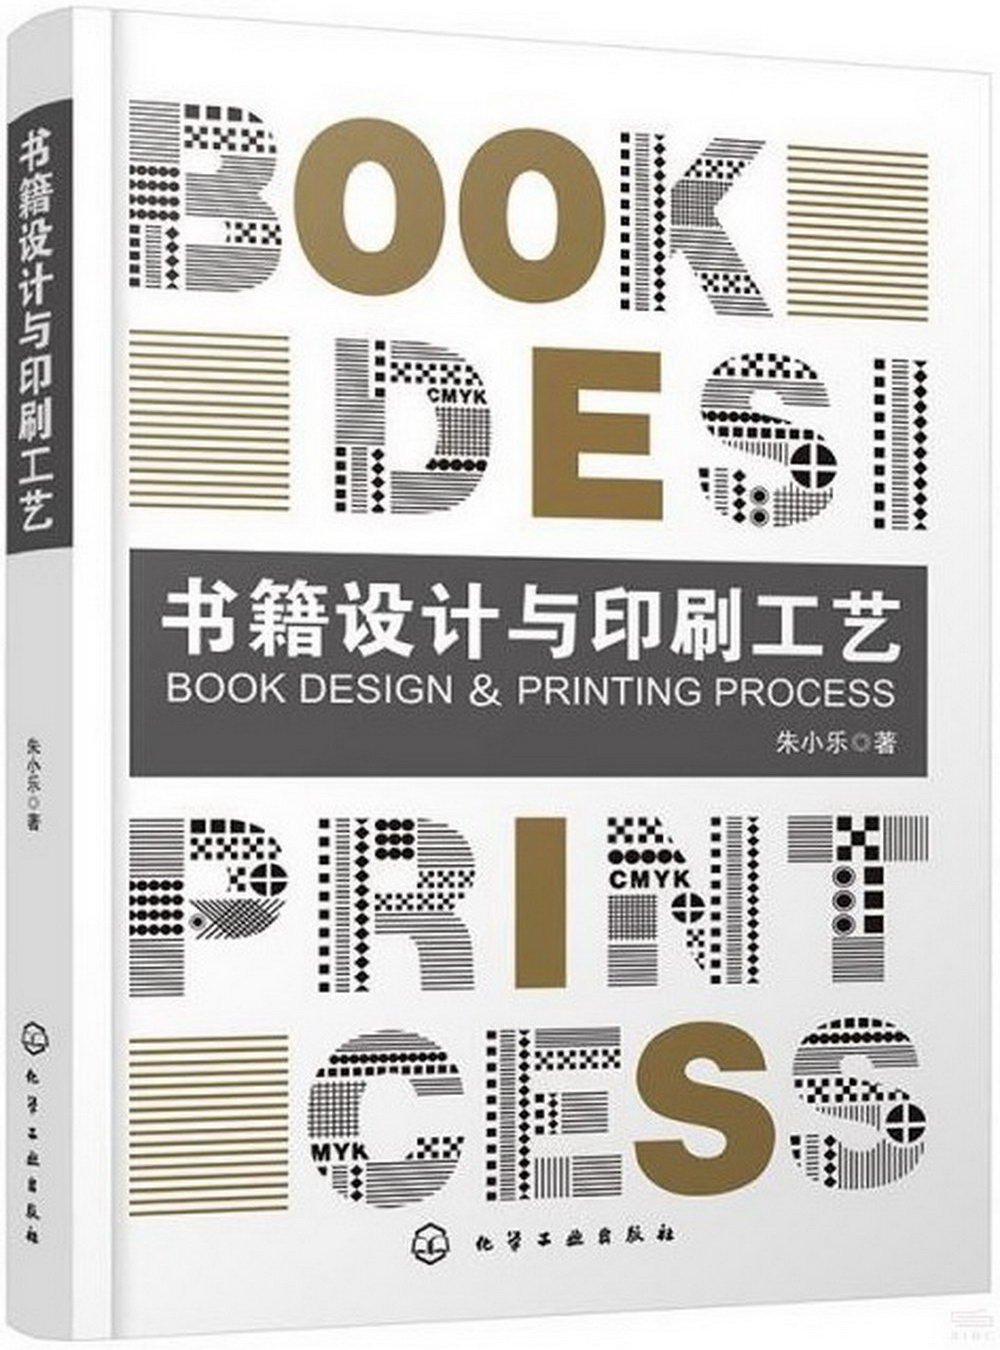 書籍設計與印刷工藝